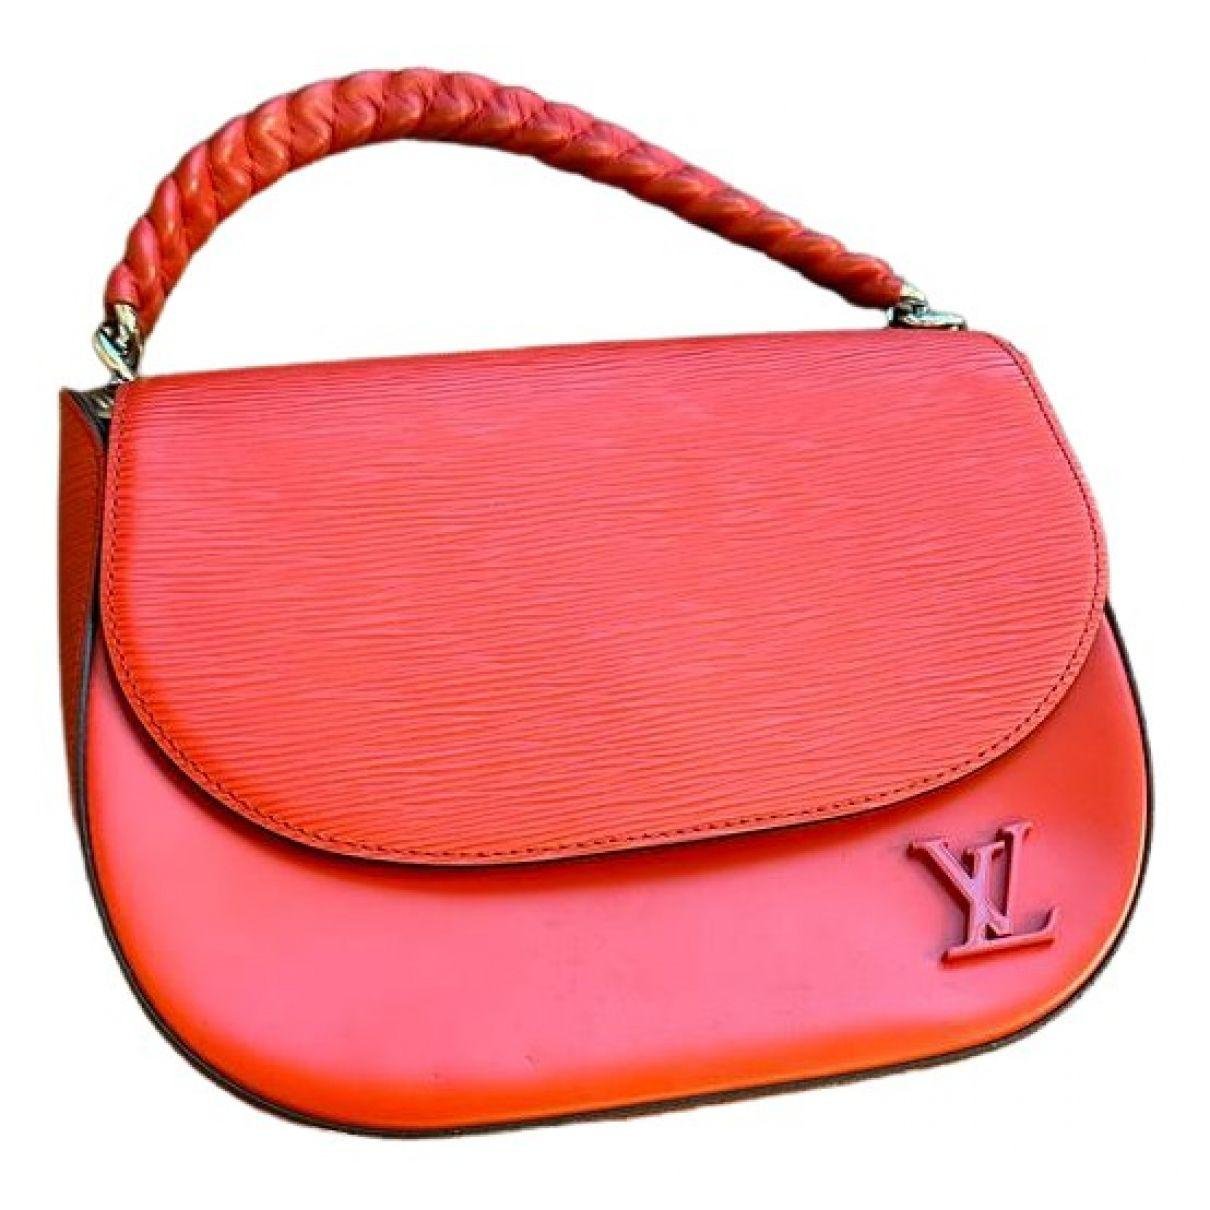 Luna leather handbag (Luna) by LOUIS VUITTON